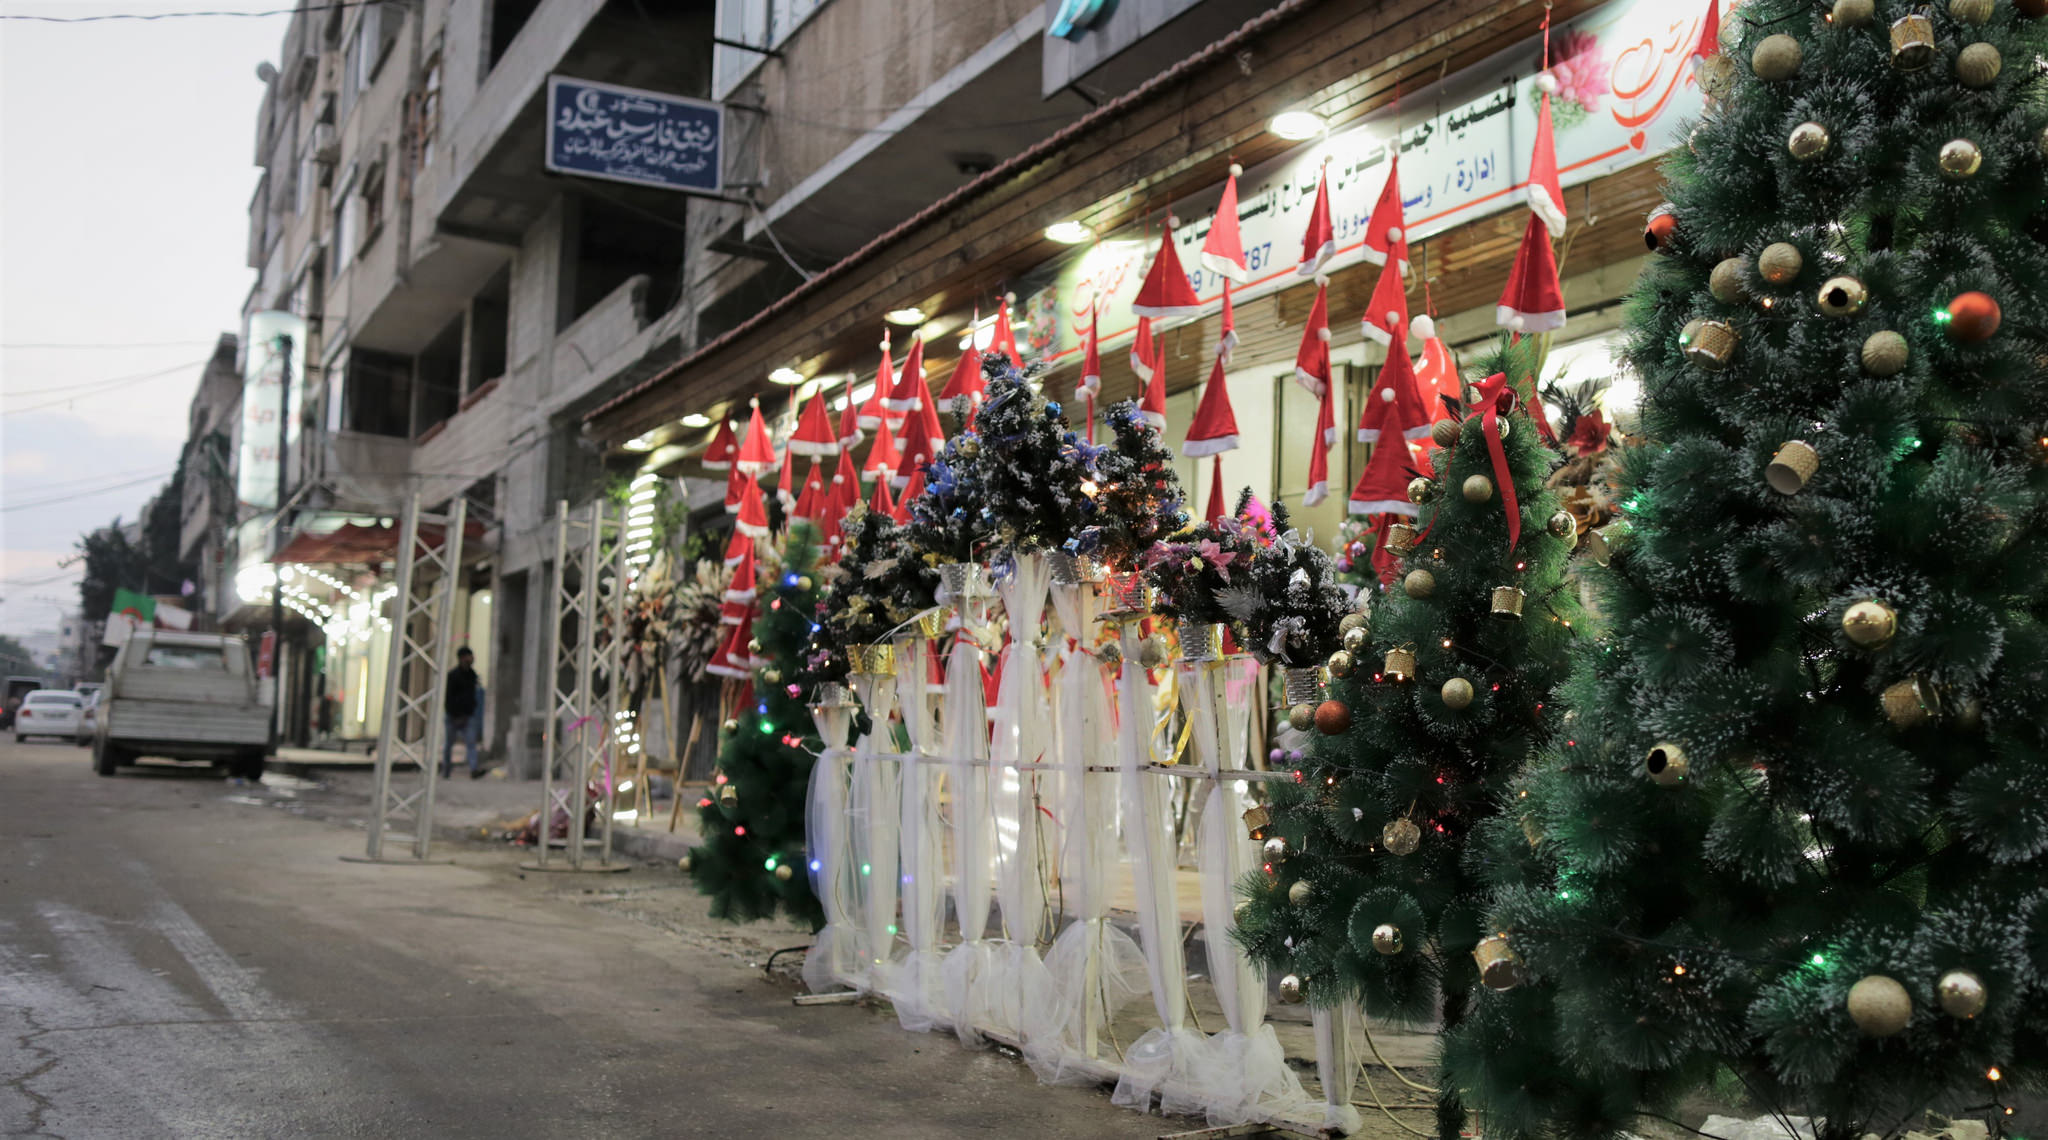 Christmas trees for sale, Gaza